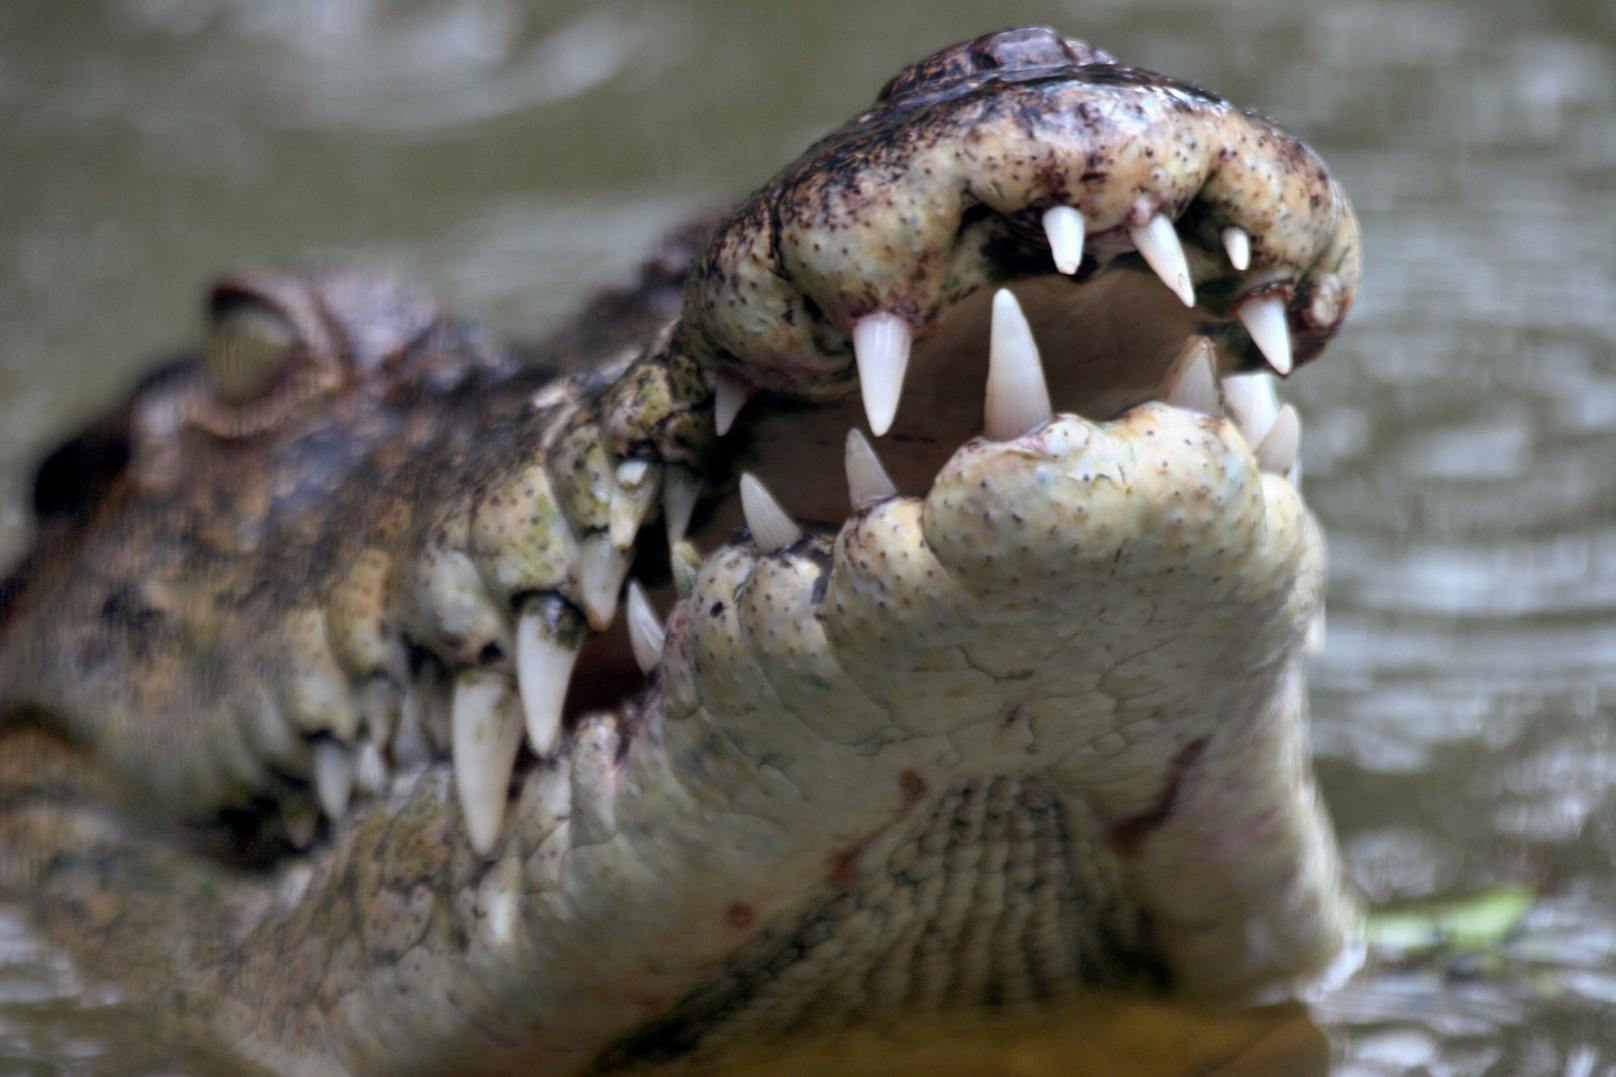 Der Mann wurde Opfer von Salzwasserkrokodilen (Crocodylus porosus), den größten heute lebenden Krokodilen.